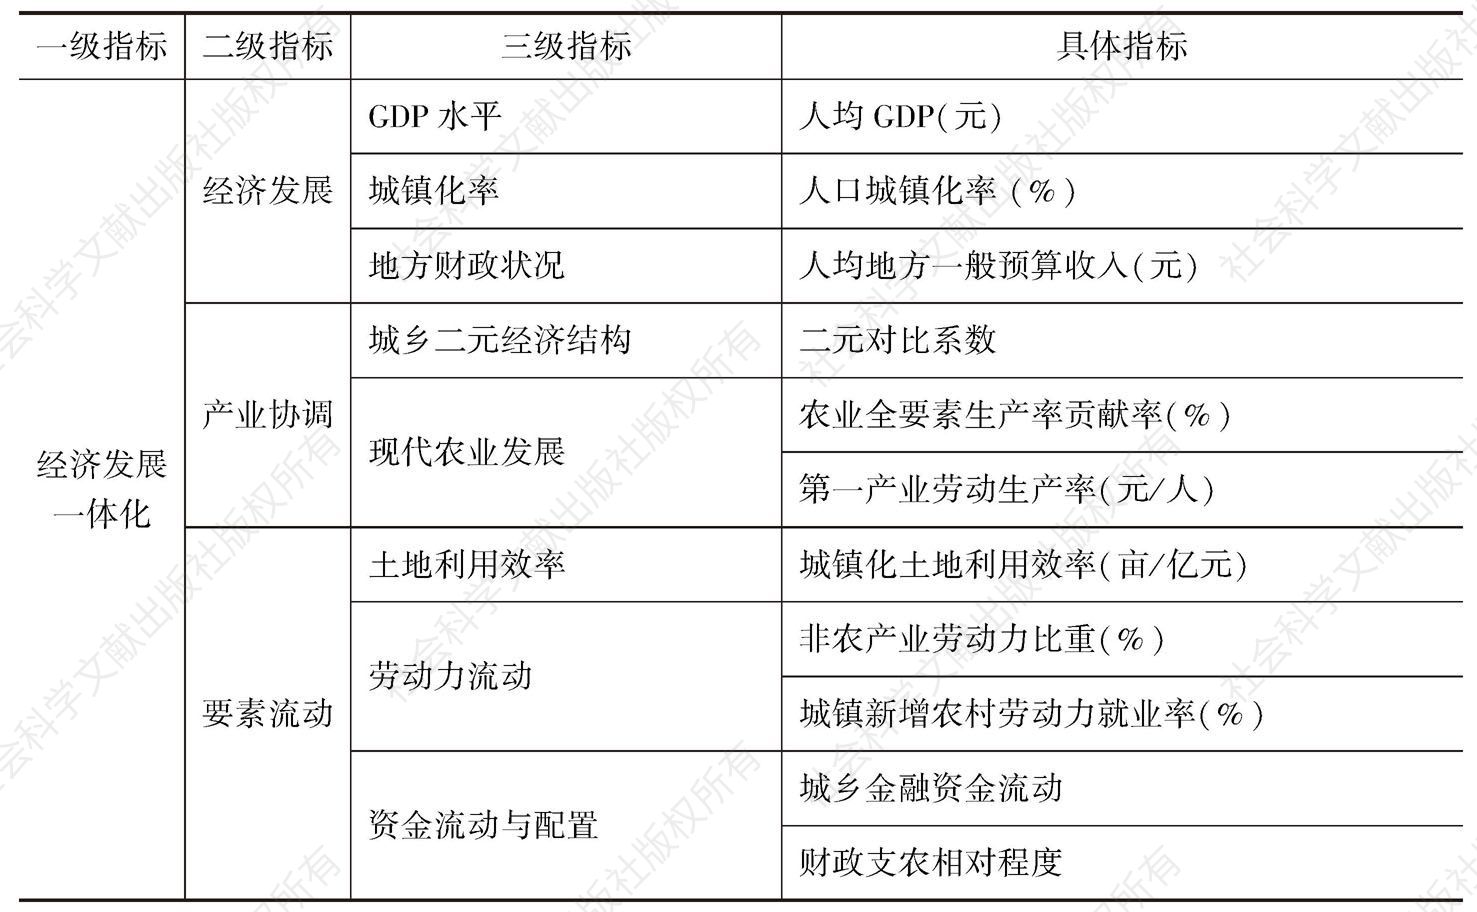 表2-1 中国城乡发展一体化指数指标体系